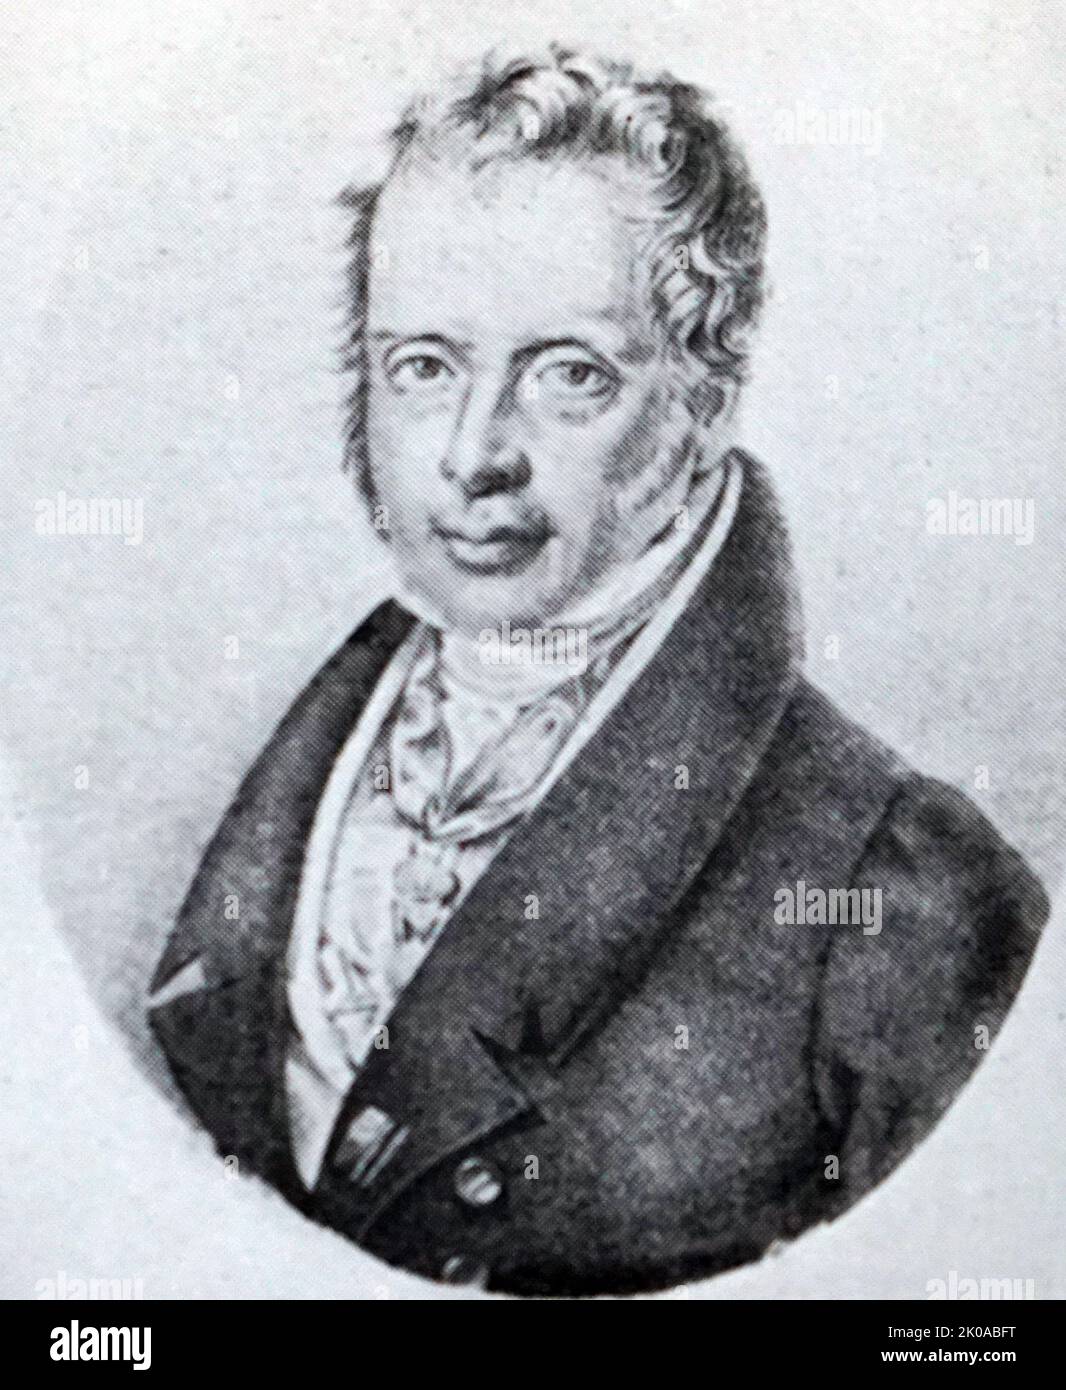 Anselm Mayer Rothschild. Mayer Amschel Rothschild (23 febbraio 1744 – 19 settembre 1812) è stato un banchiere di successo e fondatore della dinastia bancaria Rothschild. Era un ebreo Ashkenazi Foto Stock